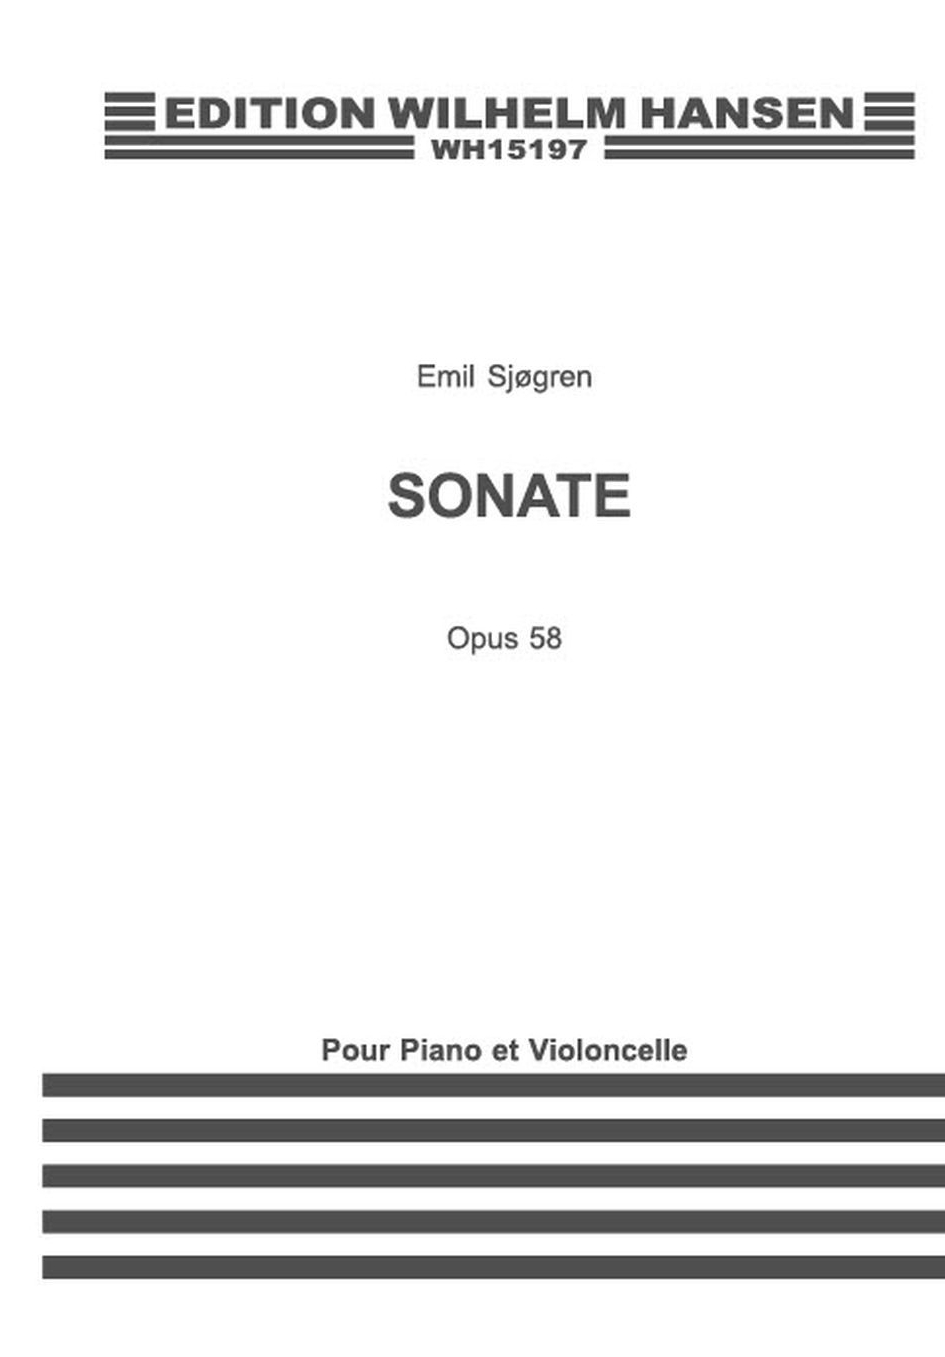 Emil Sjgren: Sonate Op. 58